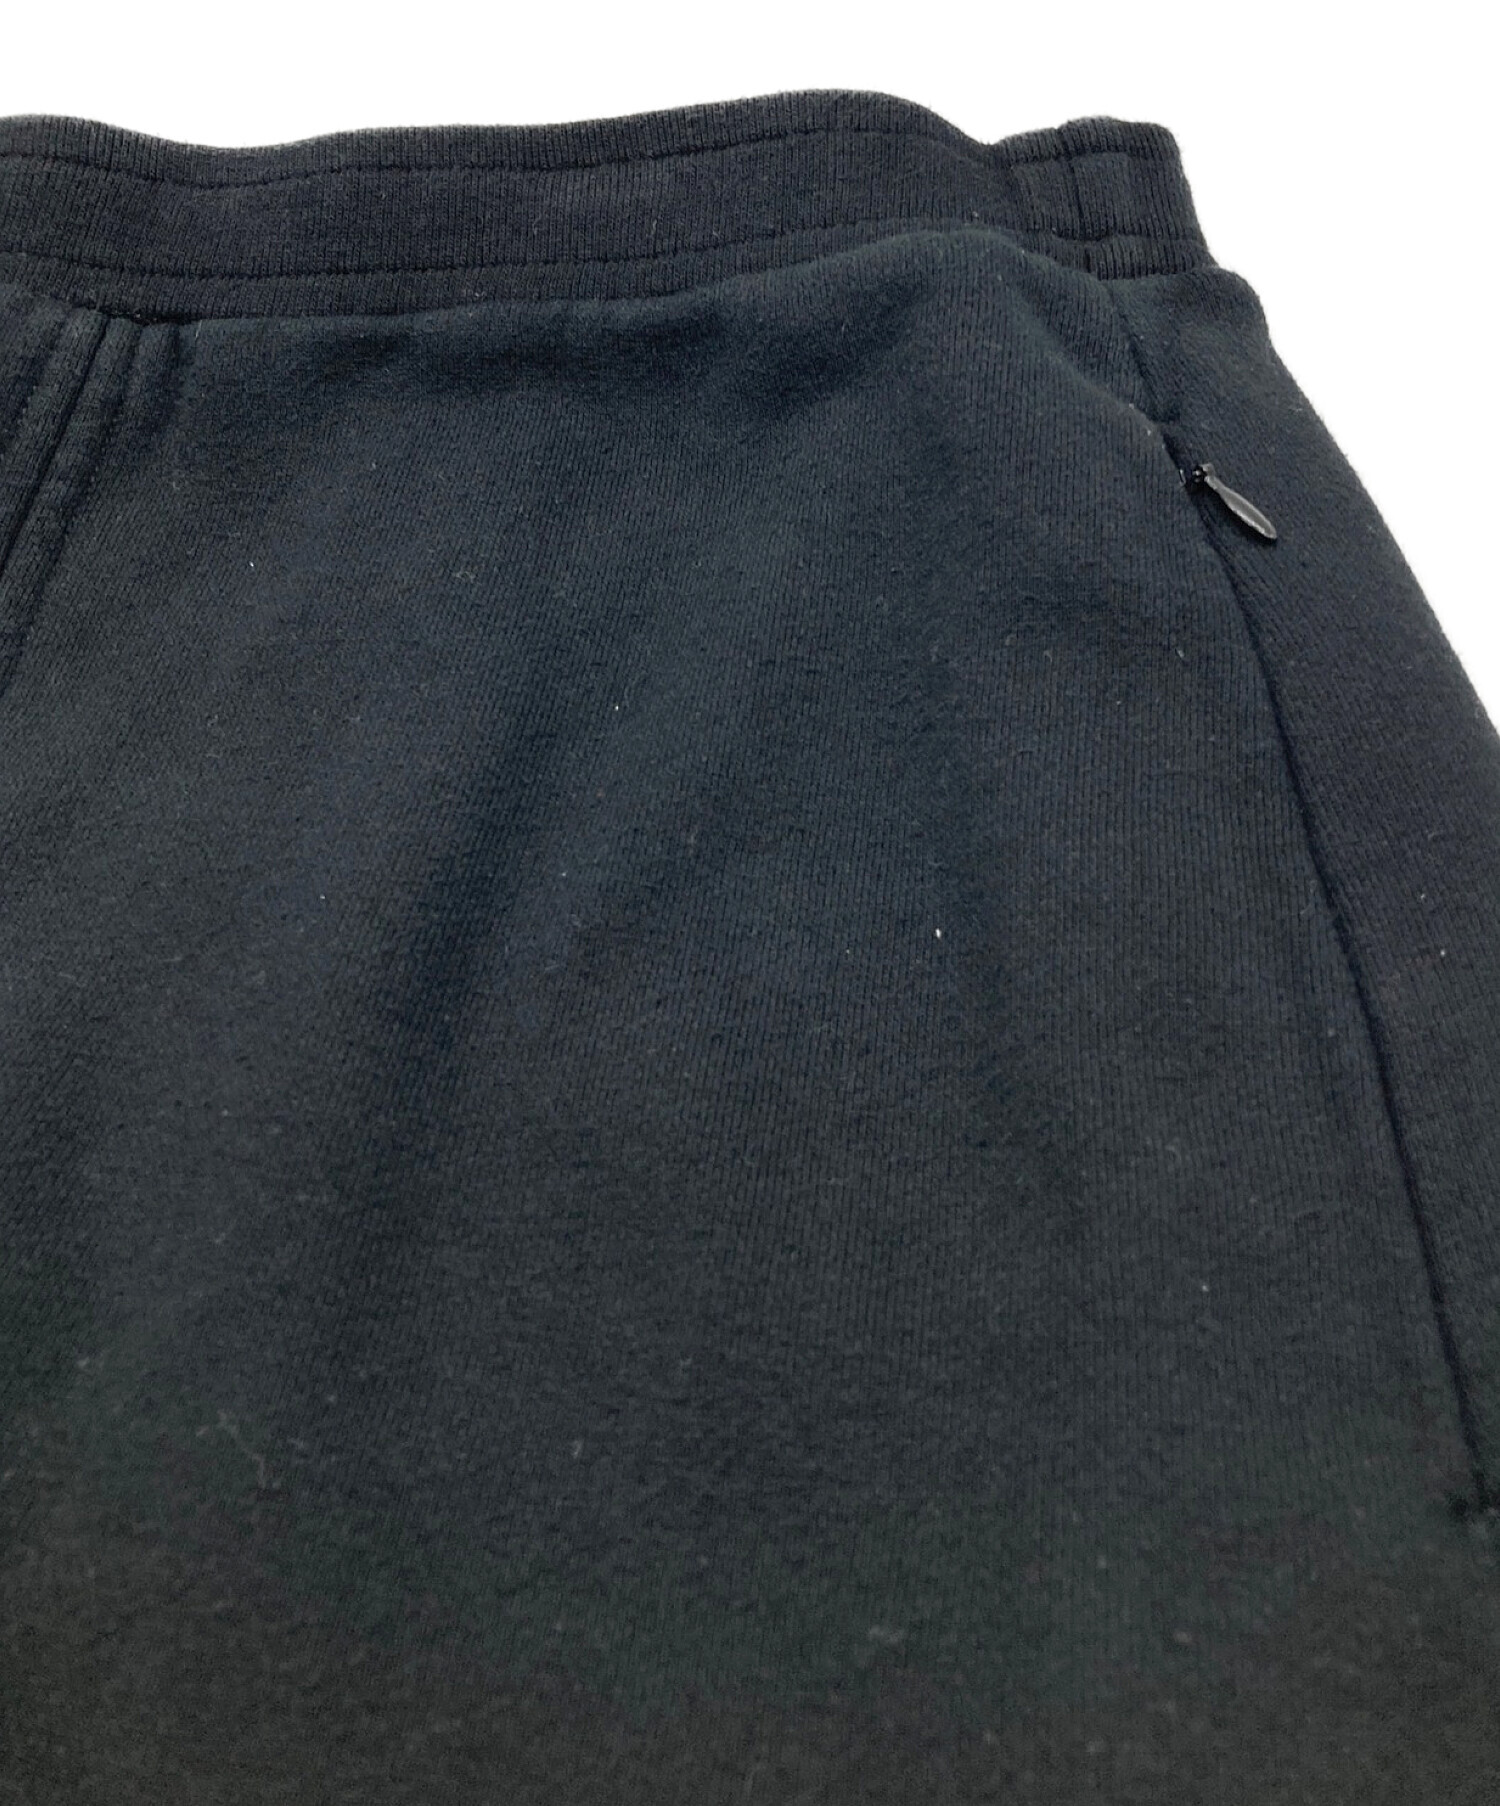 UN3D. (アンスリード) ヘムカットスウェットスカート ブラック サイズ:38